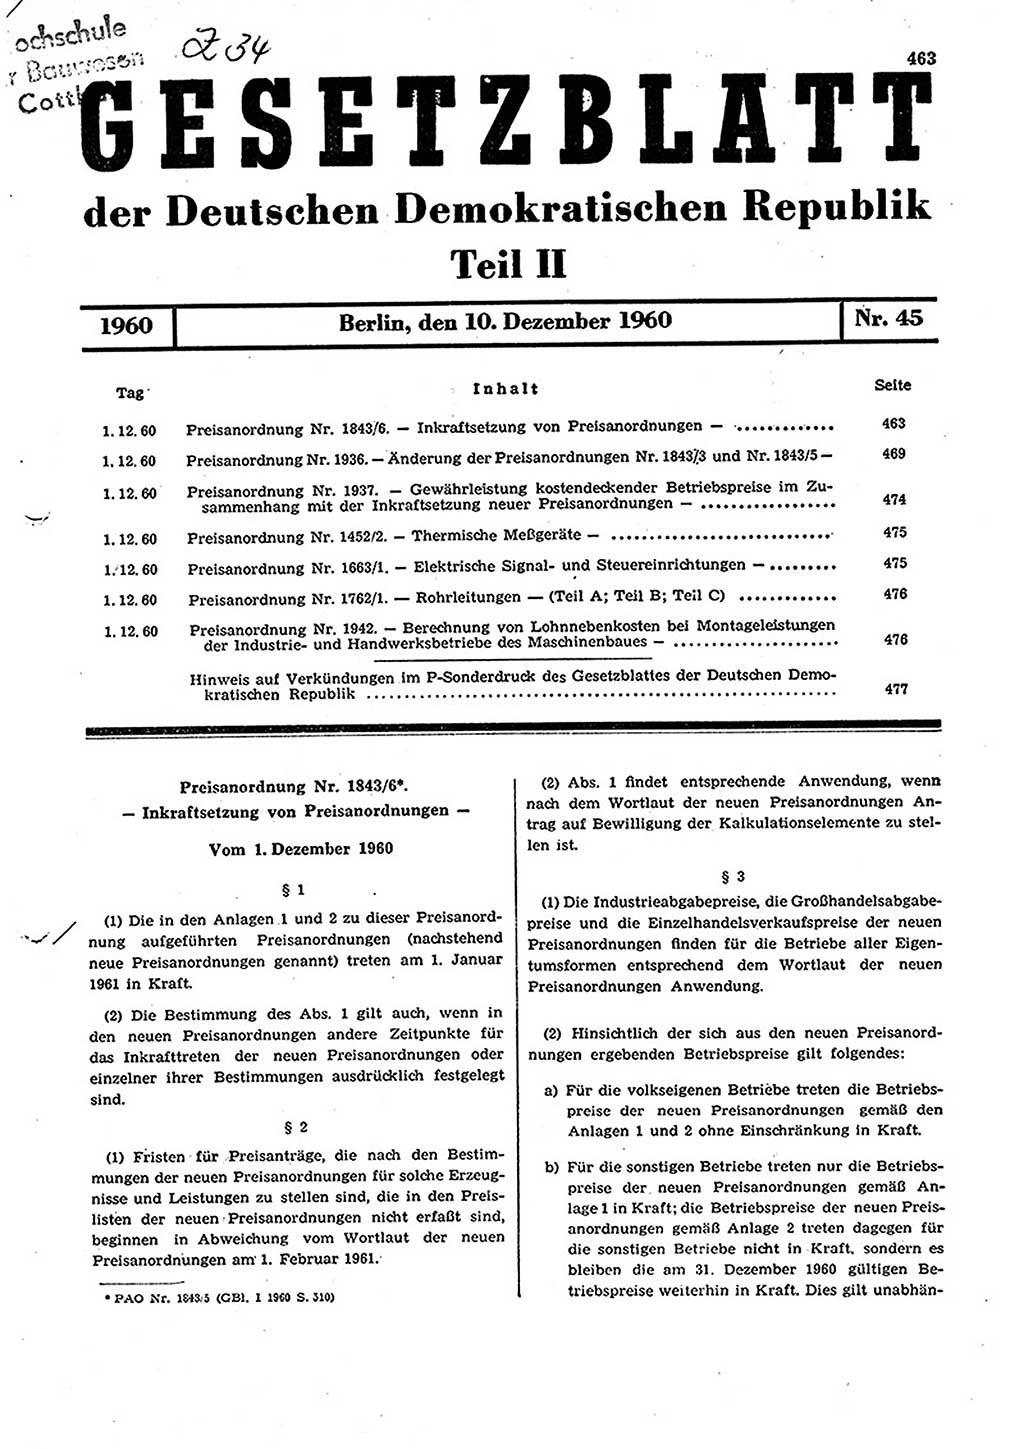 Gesetzblatt (GBl.) der Deutschen Demokratischen Republik (DDR) Teil ⅠⅠ 1960, Seite 463 (GBl. DDR ⅠⅠ 1960, S. 463)